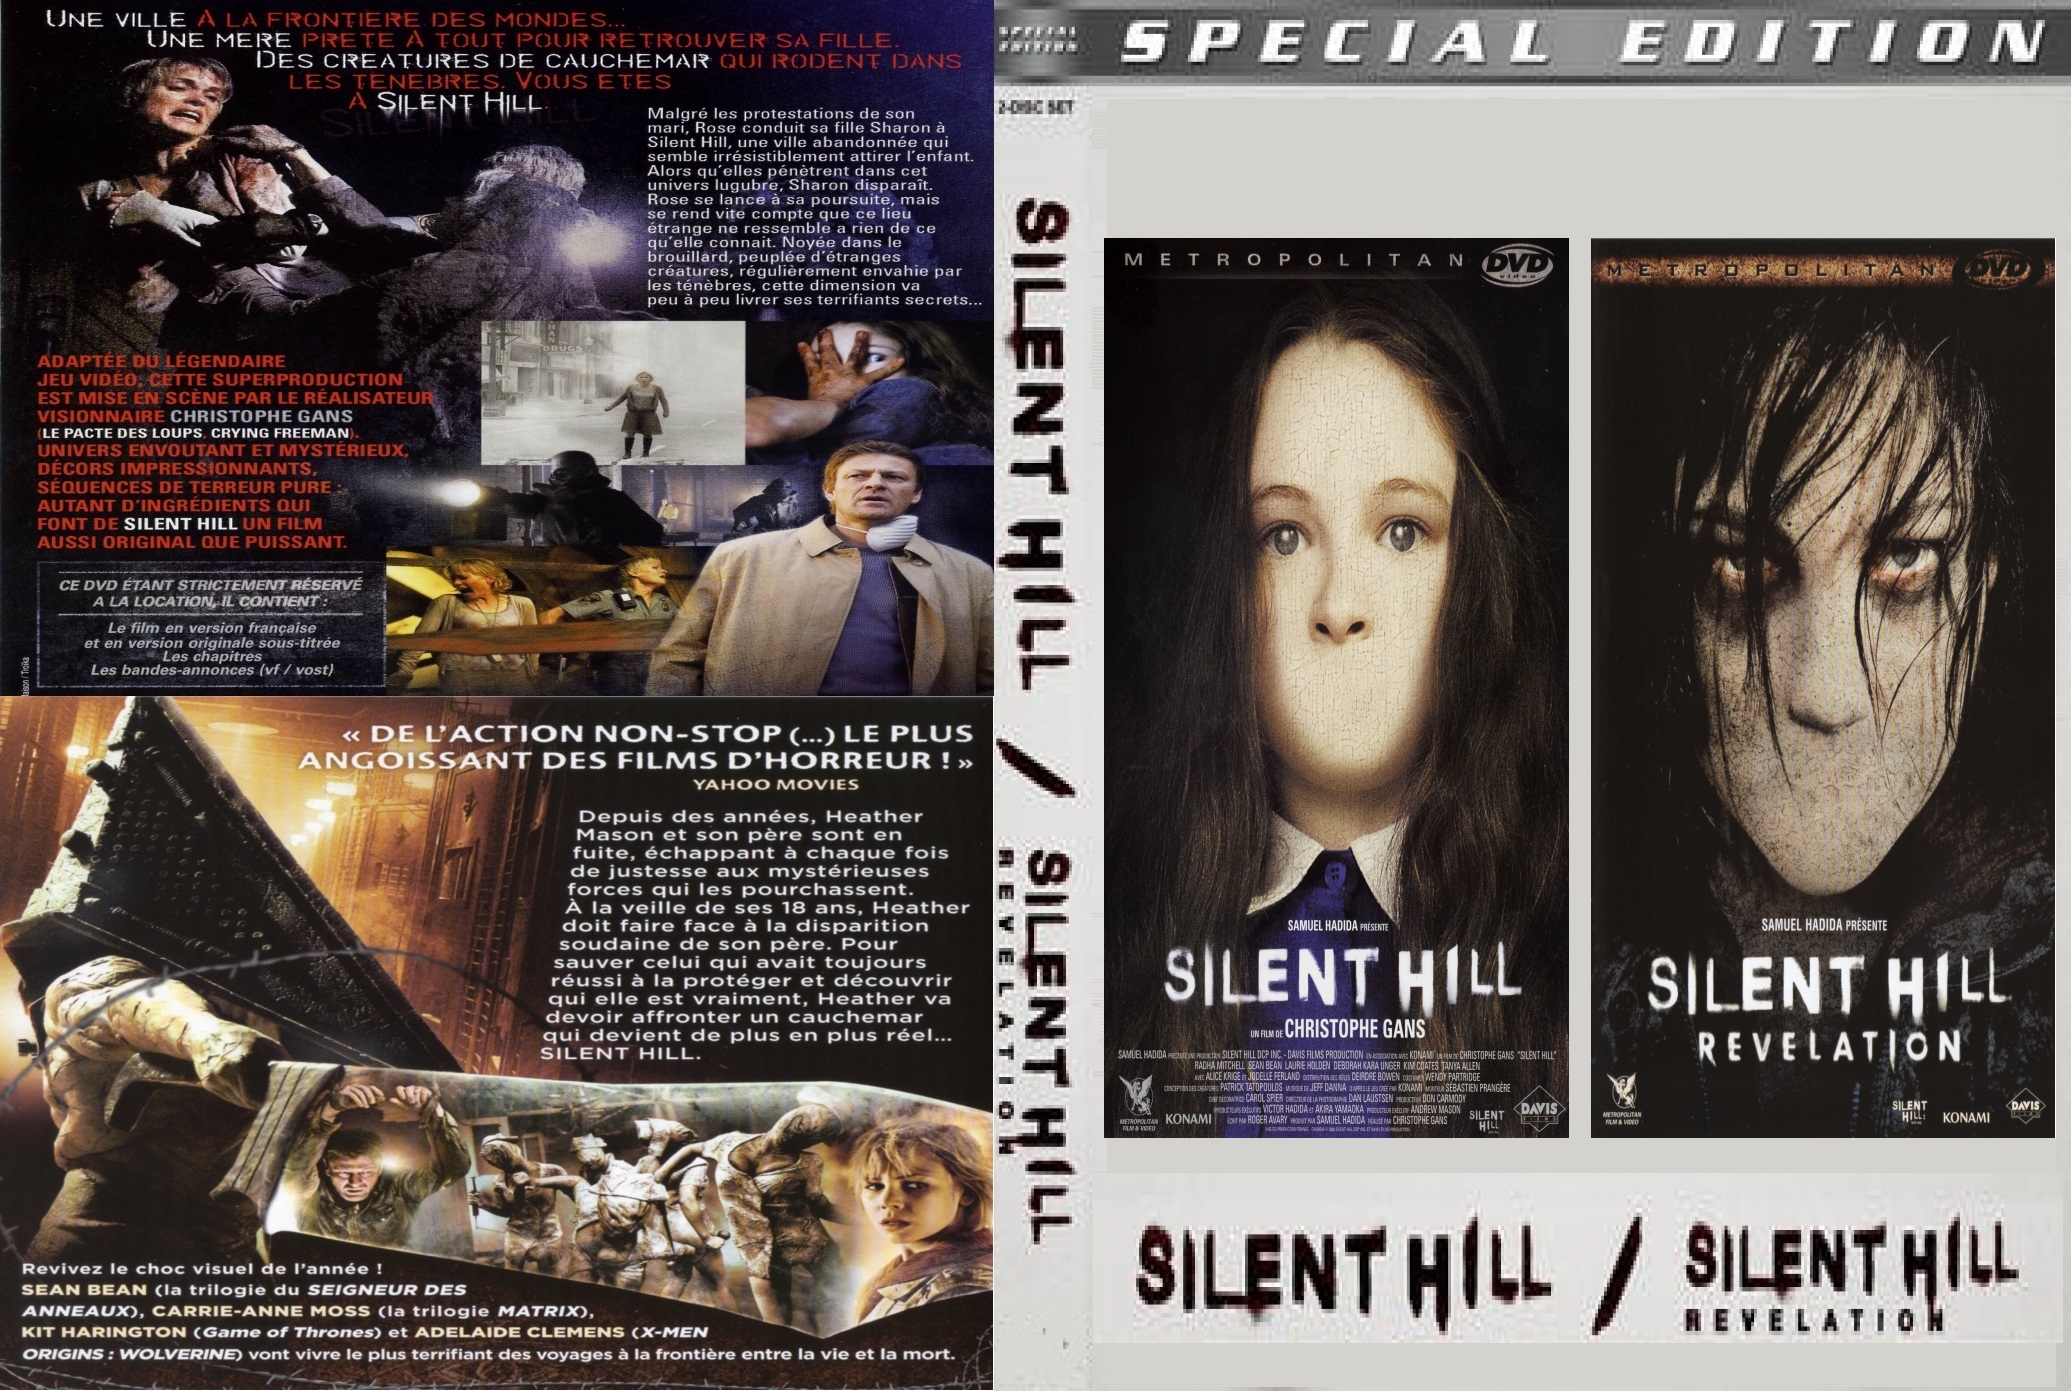 Jaquette DVD Silent Hill 1 & 2 custom